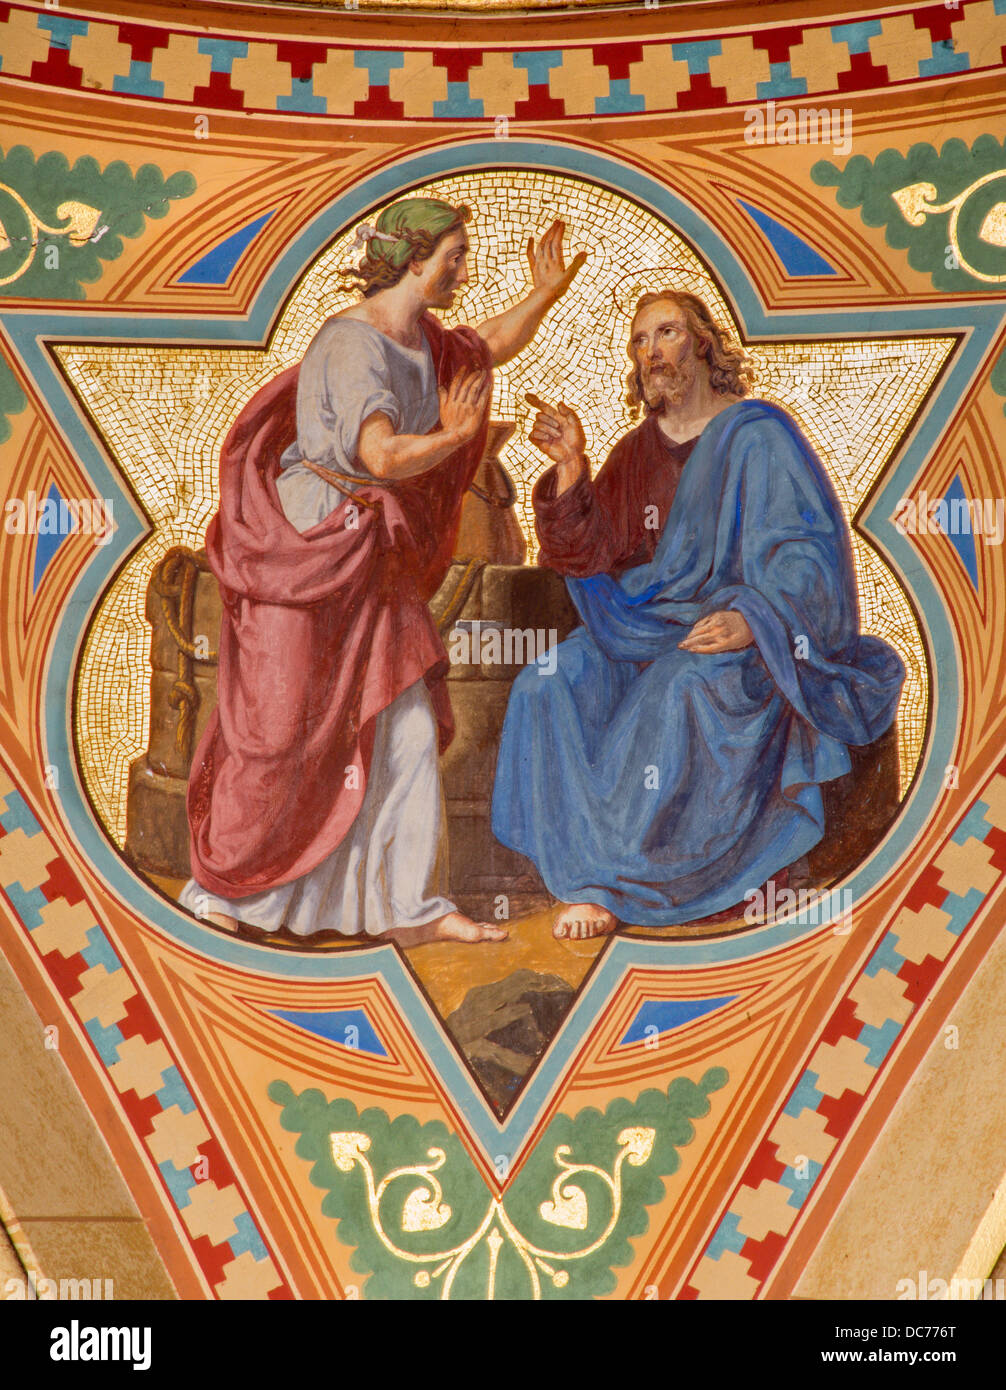 Viena - 27 de julio: Fresco de Jesús y samaritanos en bien en la nave lateral de la iglesia Altlerchenfelder Foto de stock